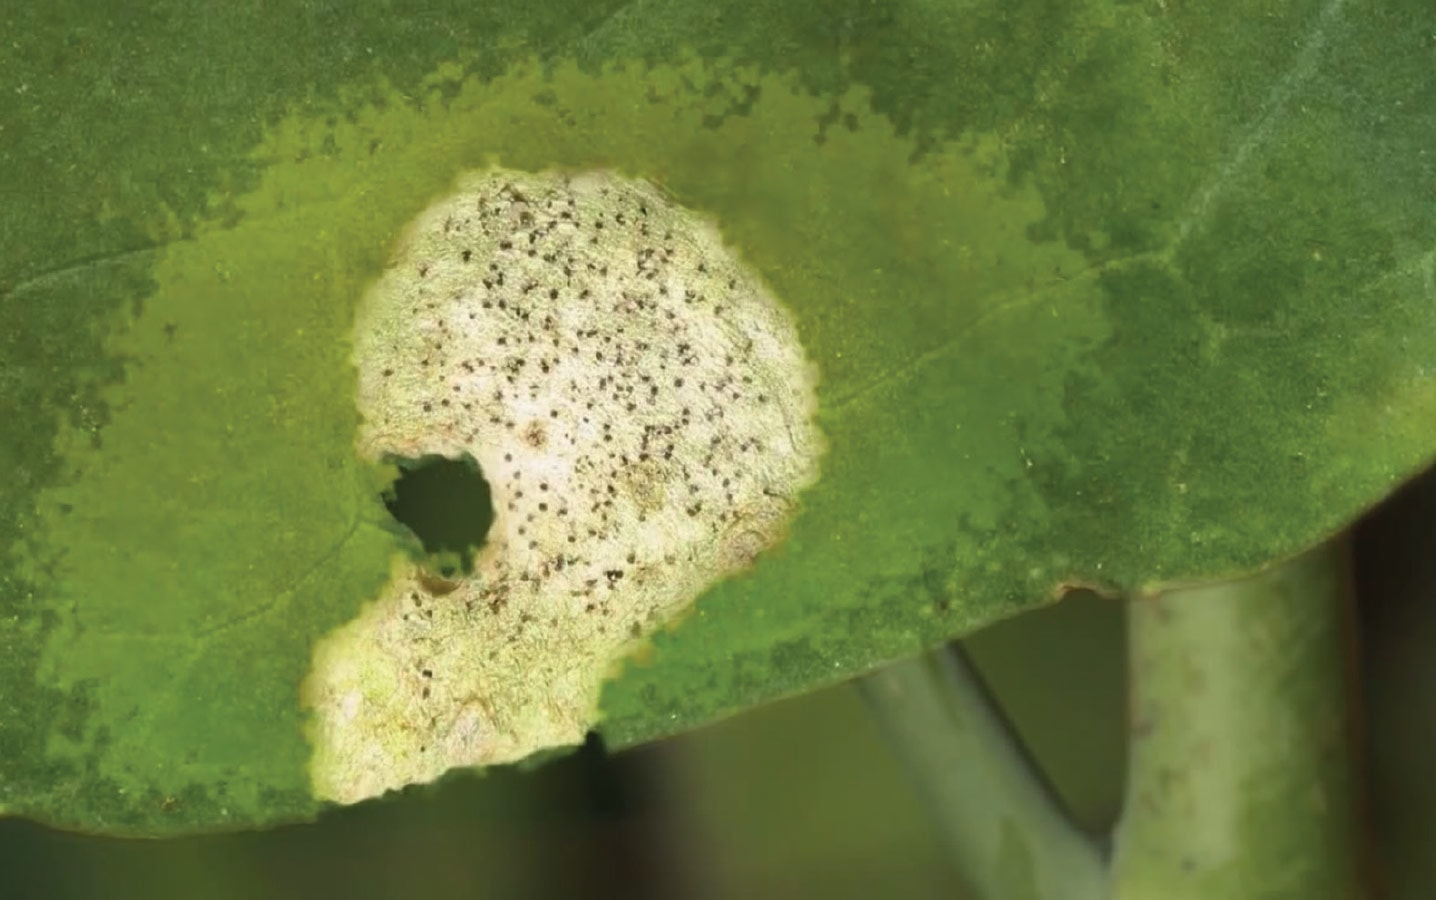 blackleg lesion on canola leaf